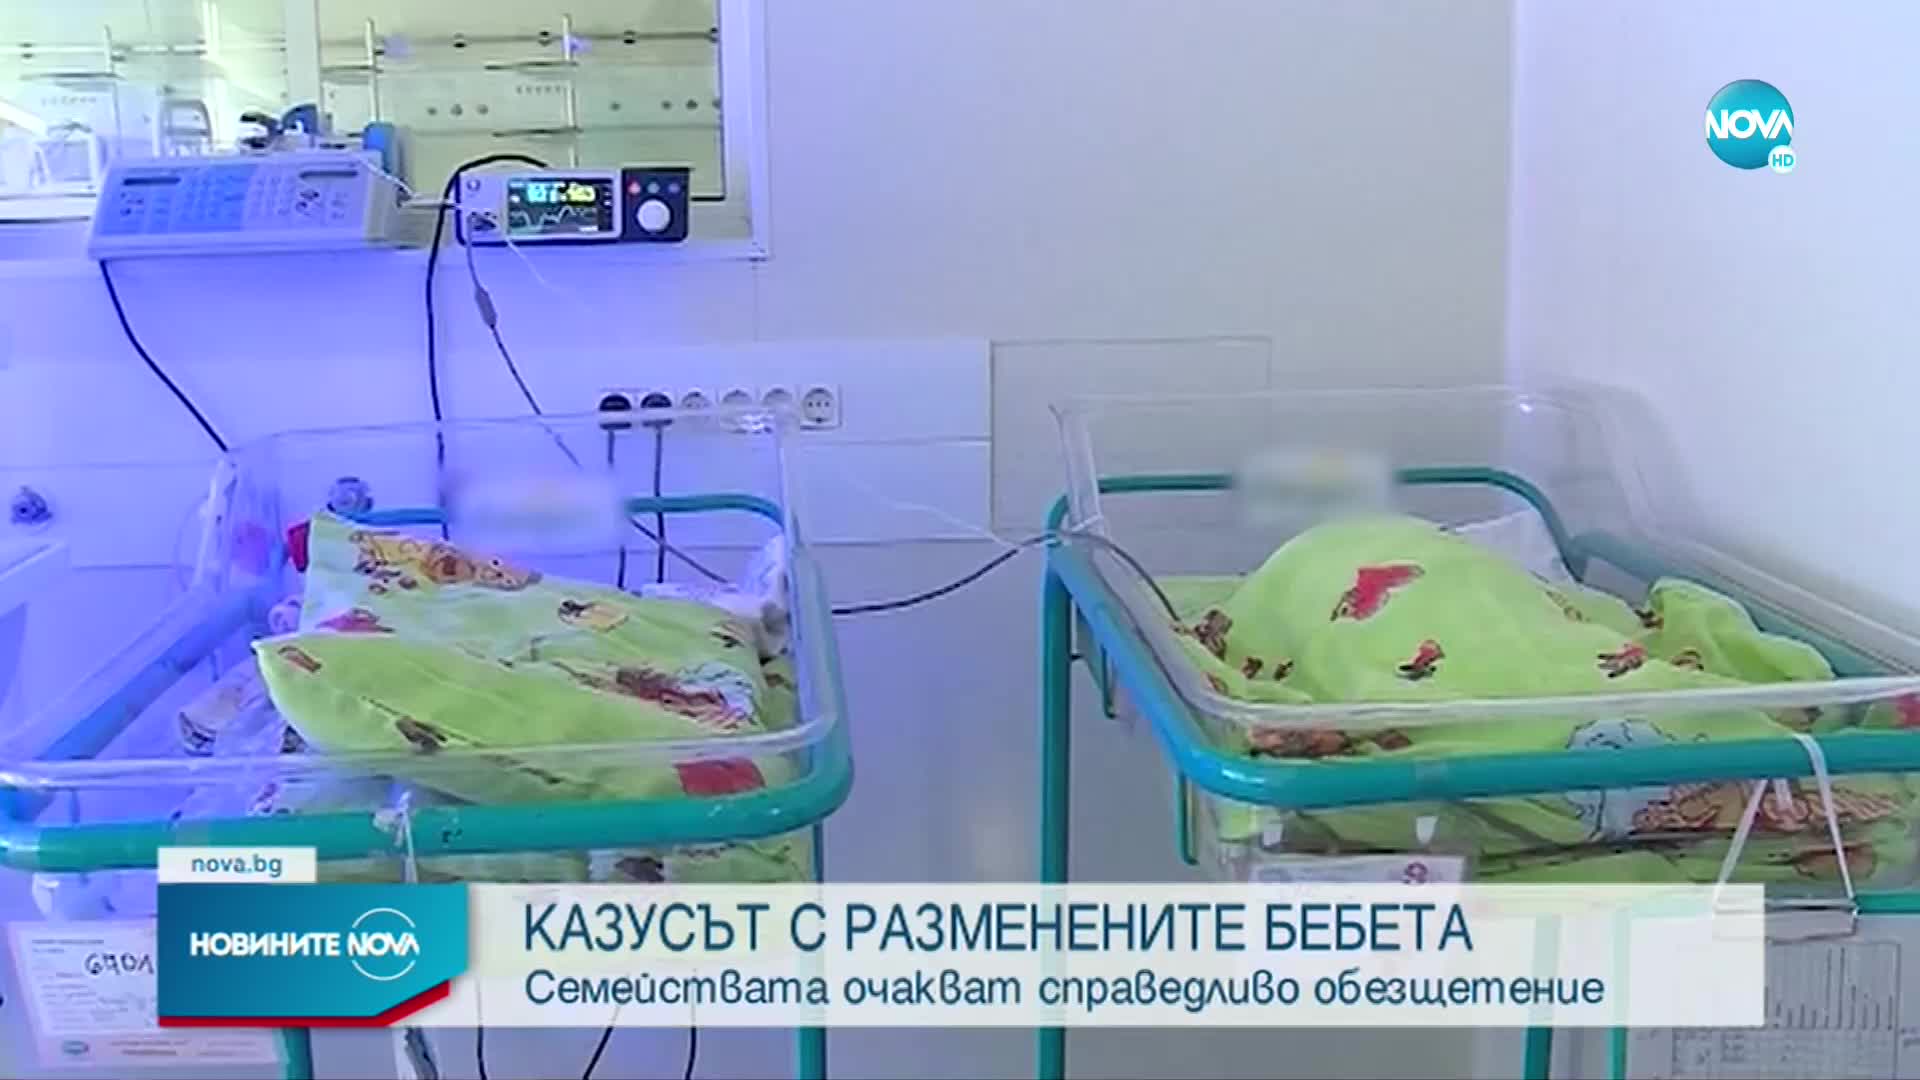 Адвокатът на една от майките с разменени бебета: Очакваме доброволно обезщетение от "Шейново"